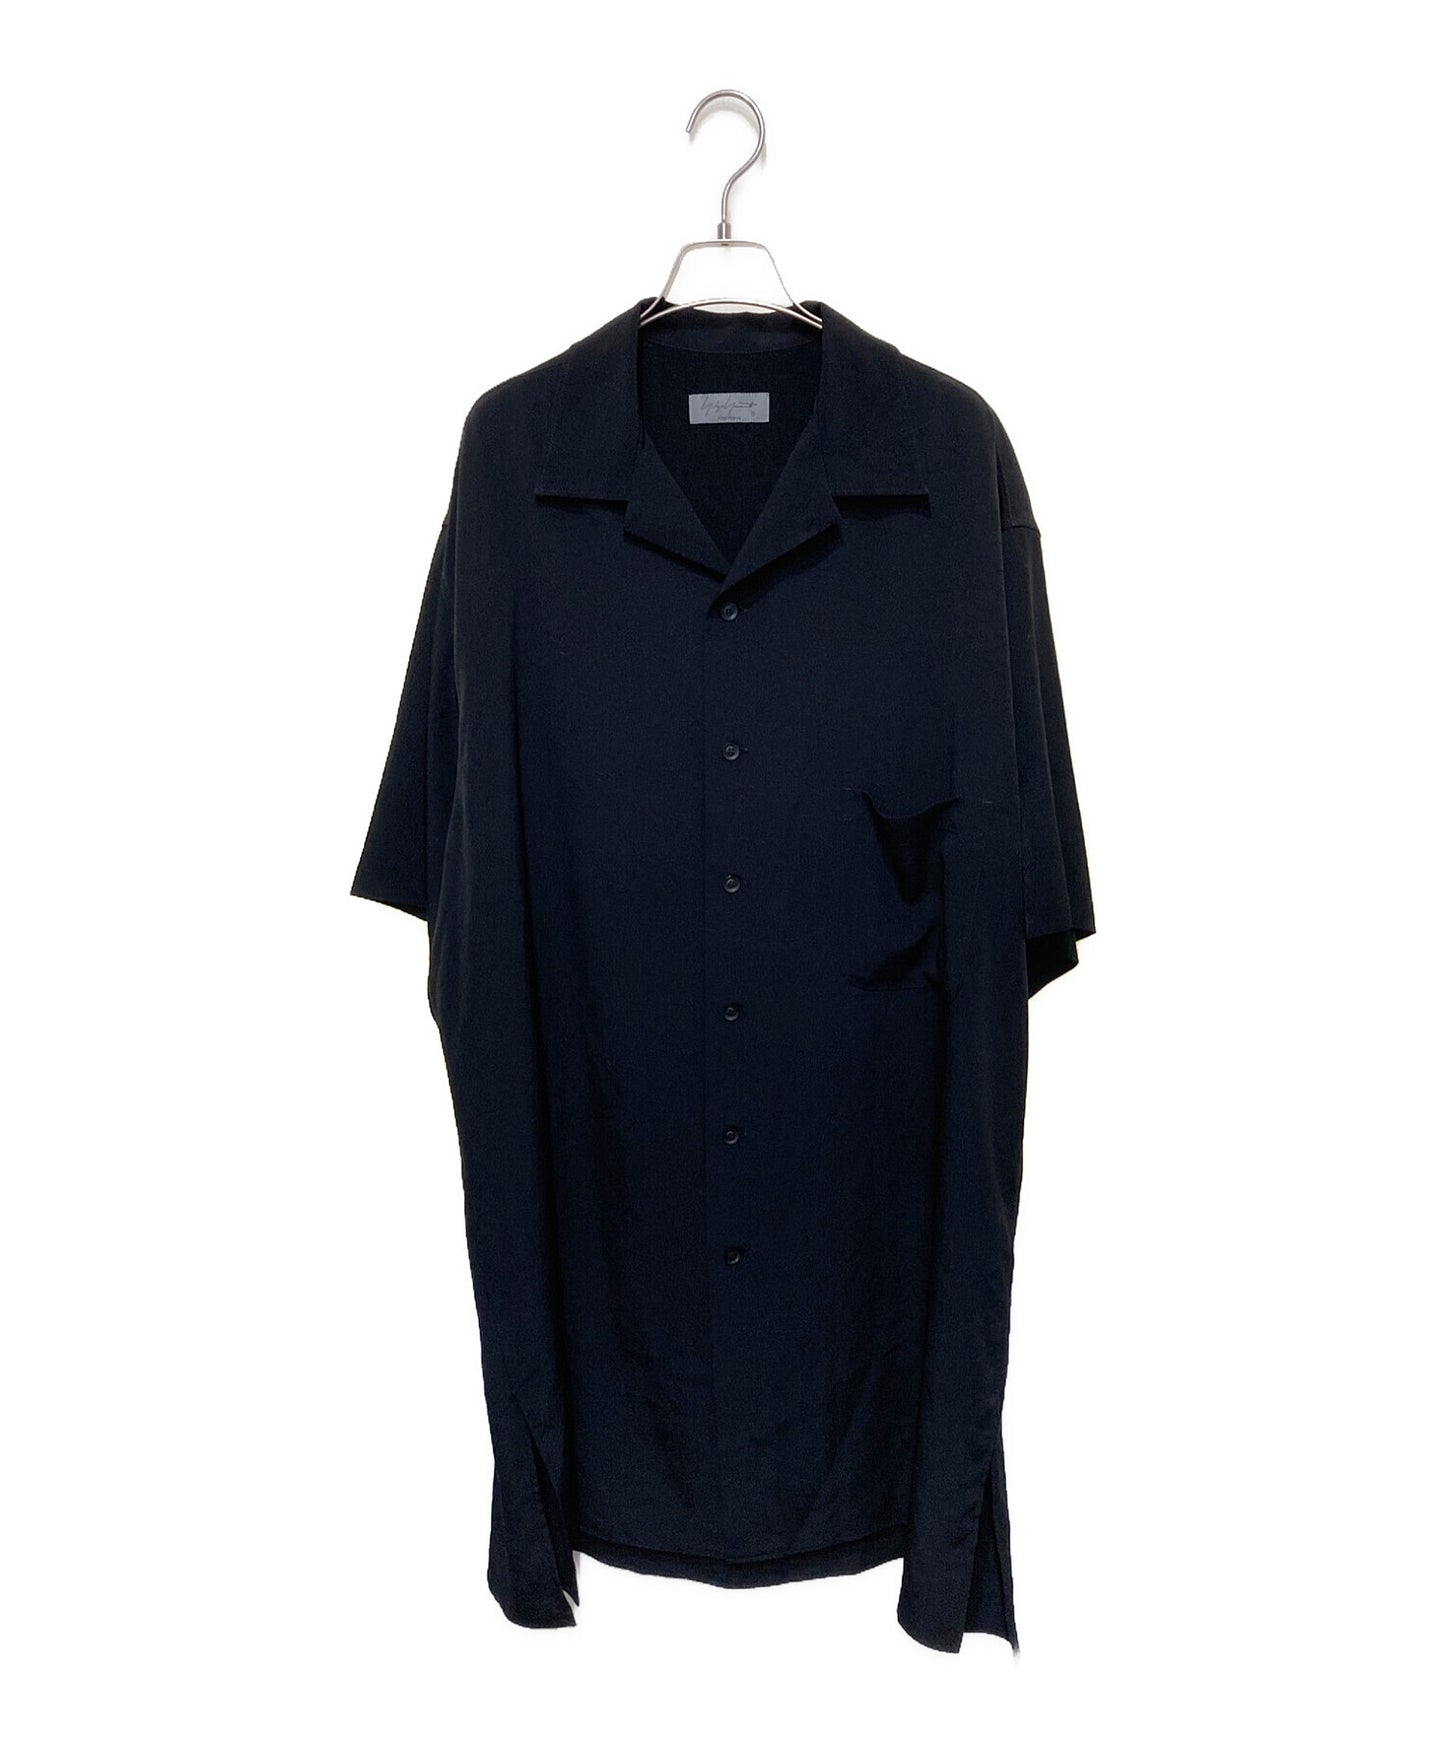 Yohji Yamamoto Pour Homme Open Collar Long Shirt HG-B47-502